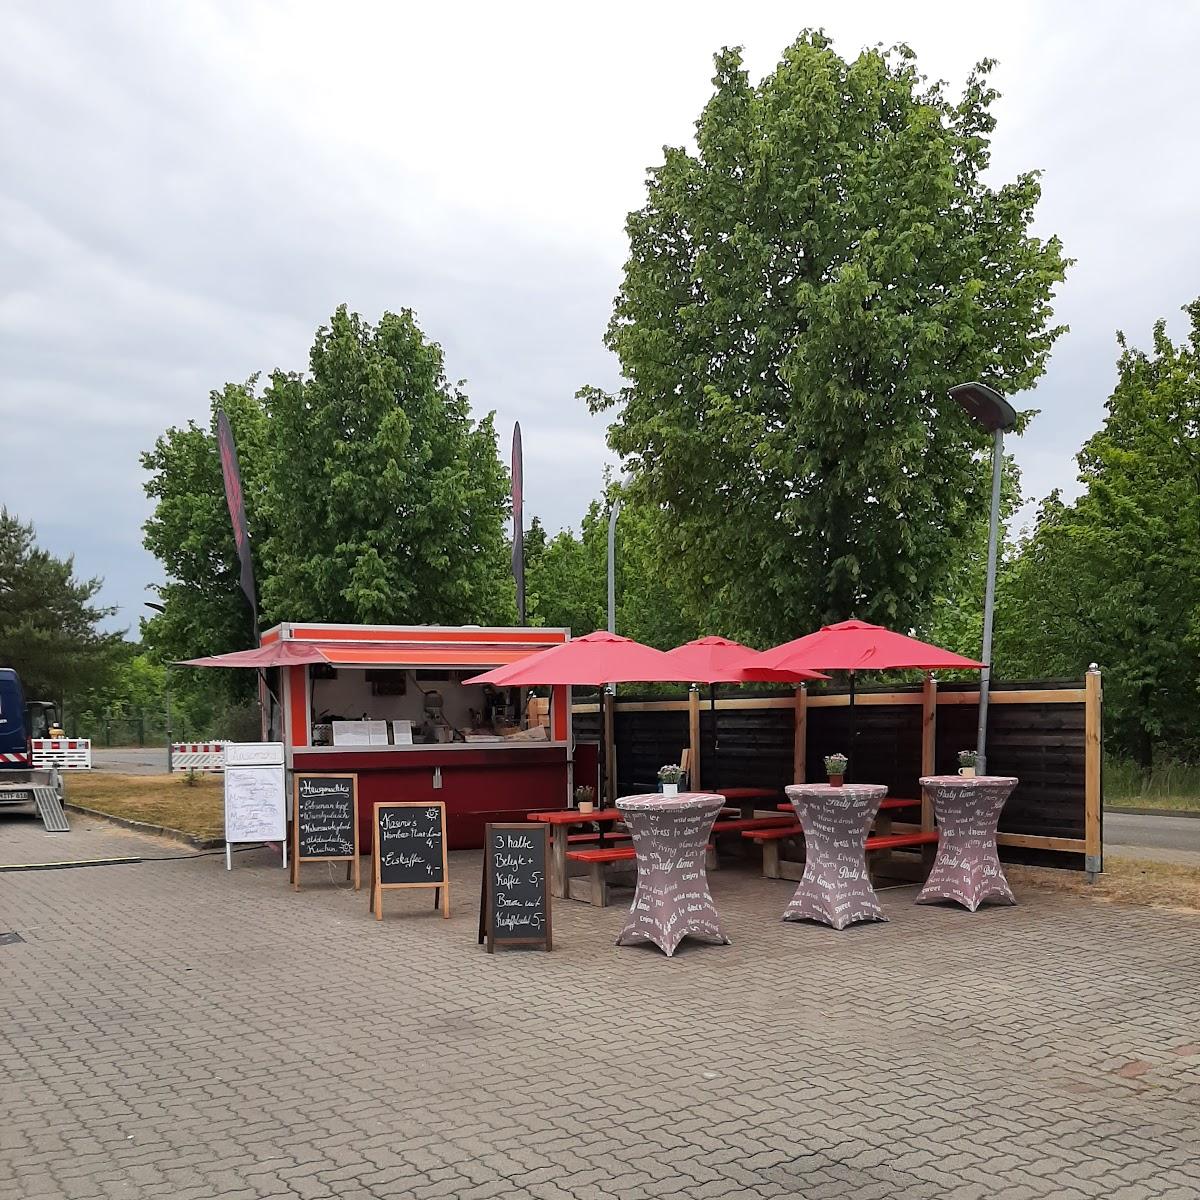 Restaurant "kasimirs köstlichkeiten" in Wolgast